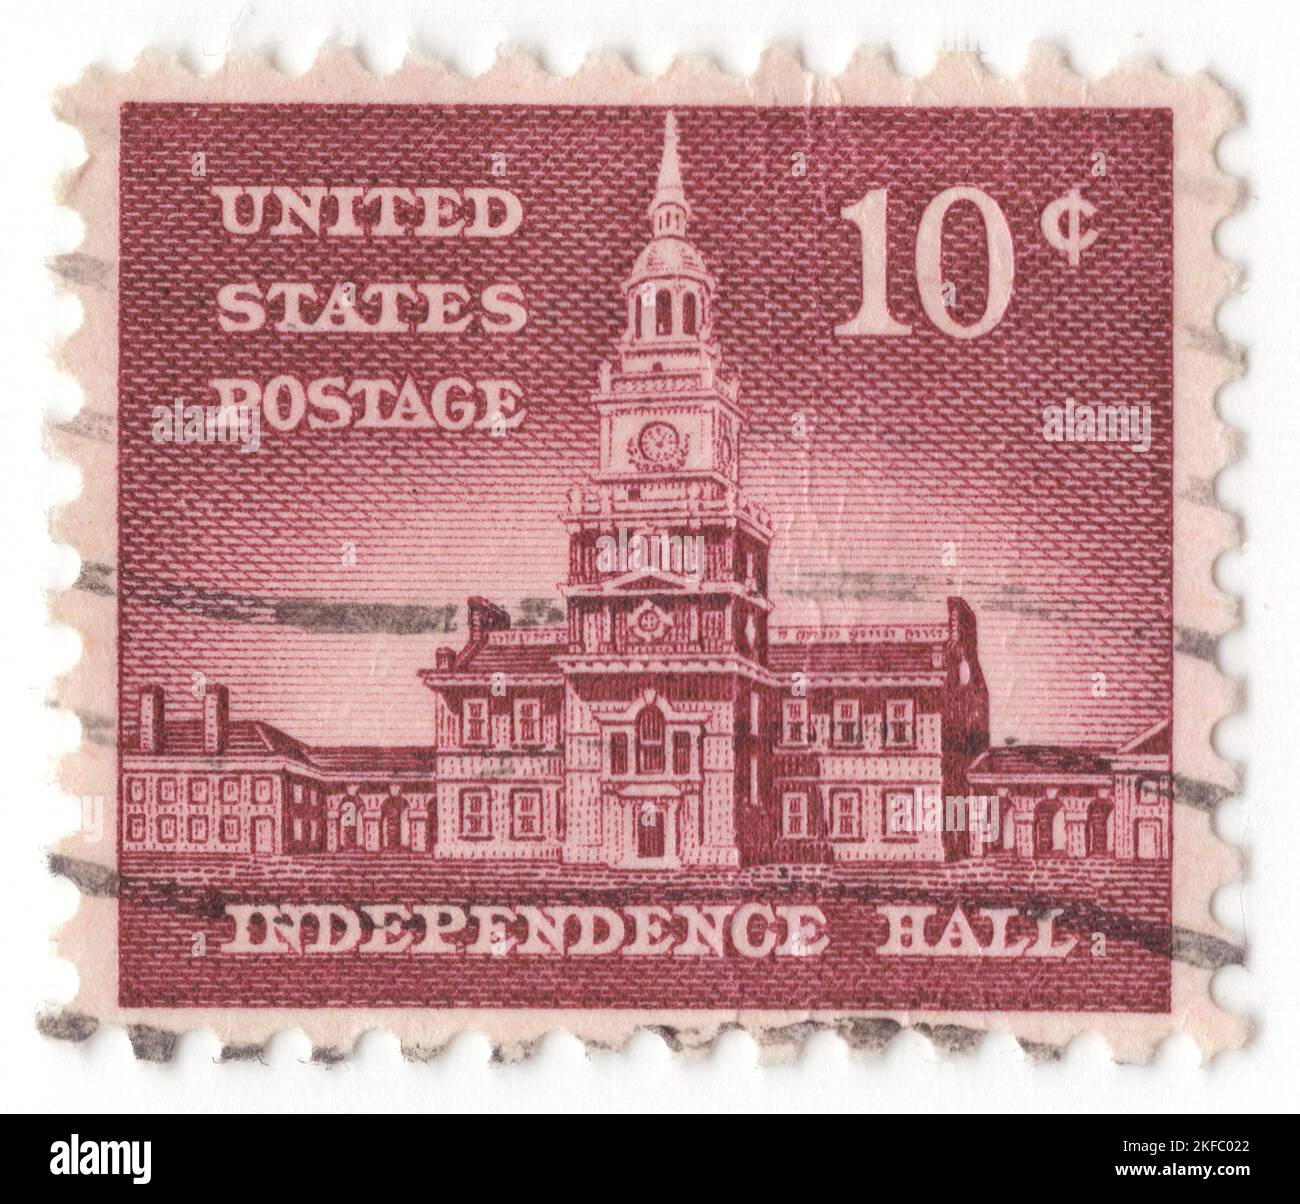 USA - 1956: Un 10 cents Rose-Lake Independence Hall est un bâtiment civique historique à Philadelphie, où la Déclaration d'indépendance des États-Unis et la Constitution des États-Unis ont été débattues et adoptées par les Pères fondateurs de l'Amérique. Le bâtiment a été achevé en 1753 comme la maison d'État de Pennsylvanie et a servi de capitole pour la province et le Commonwealth de Pennsylvanie jusqu'à ce que la capitale de l'État déménage à Lancaster en 1799. Il a été le principal lieu de rencontre du deuxième Congrès continental de 1775 à 1781 et a été le site de la Convention constitutionnelle à l'été 1787 Banque D'Images